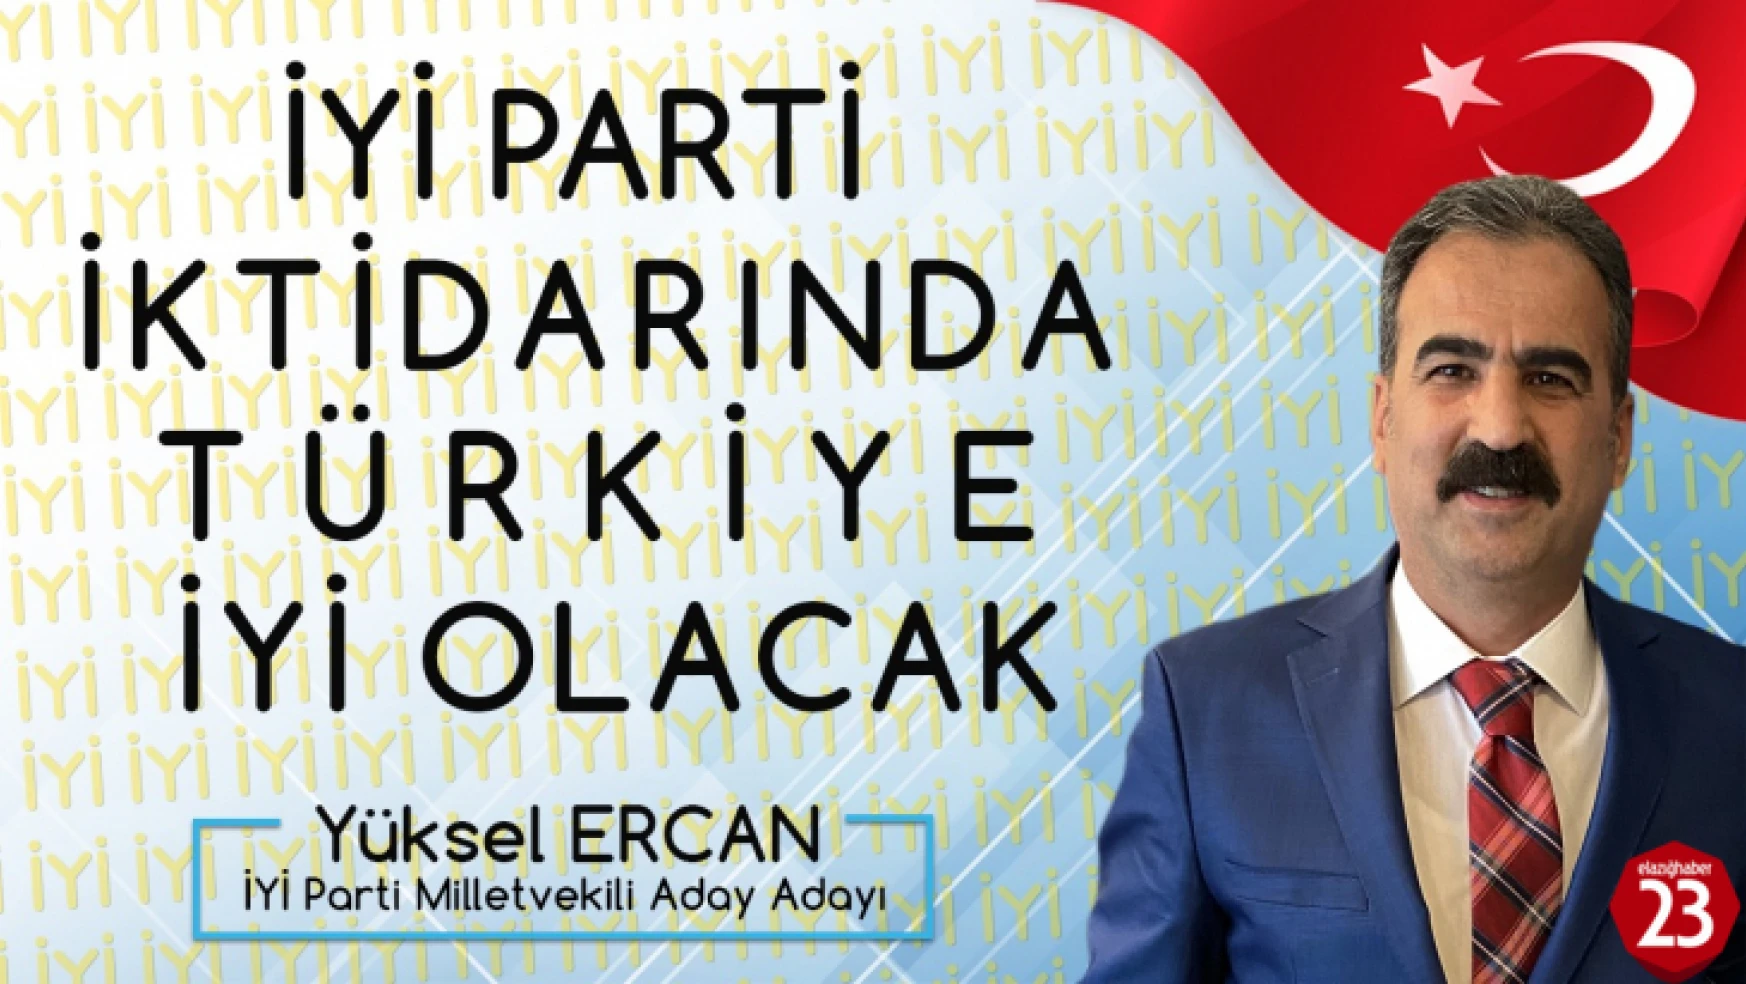 Yüksel Ercan, İyi Parti İktidarında Türkiye İyi Olacak